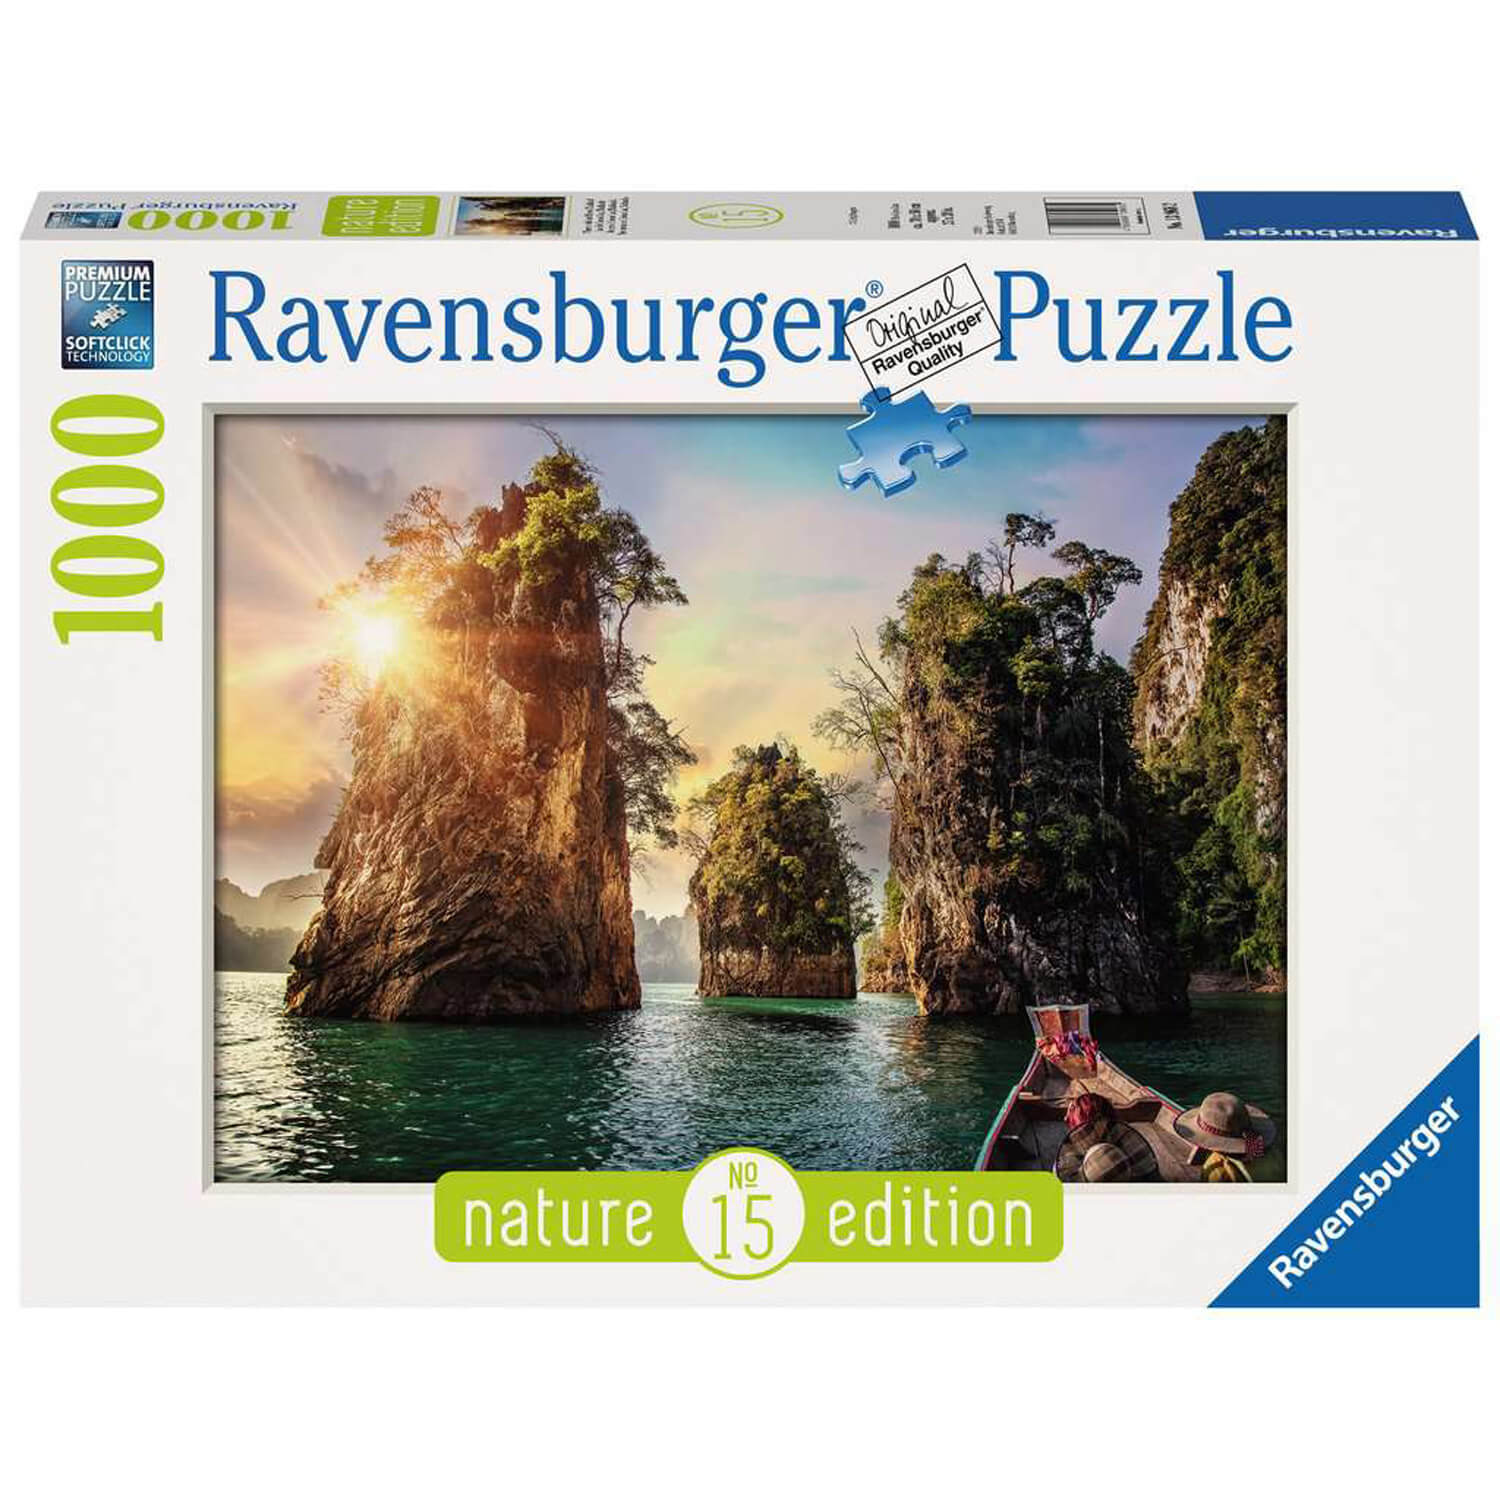 Ravensburger - Set d'accessoires de puzzle 3 en 1 - Colle, trieur